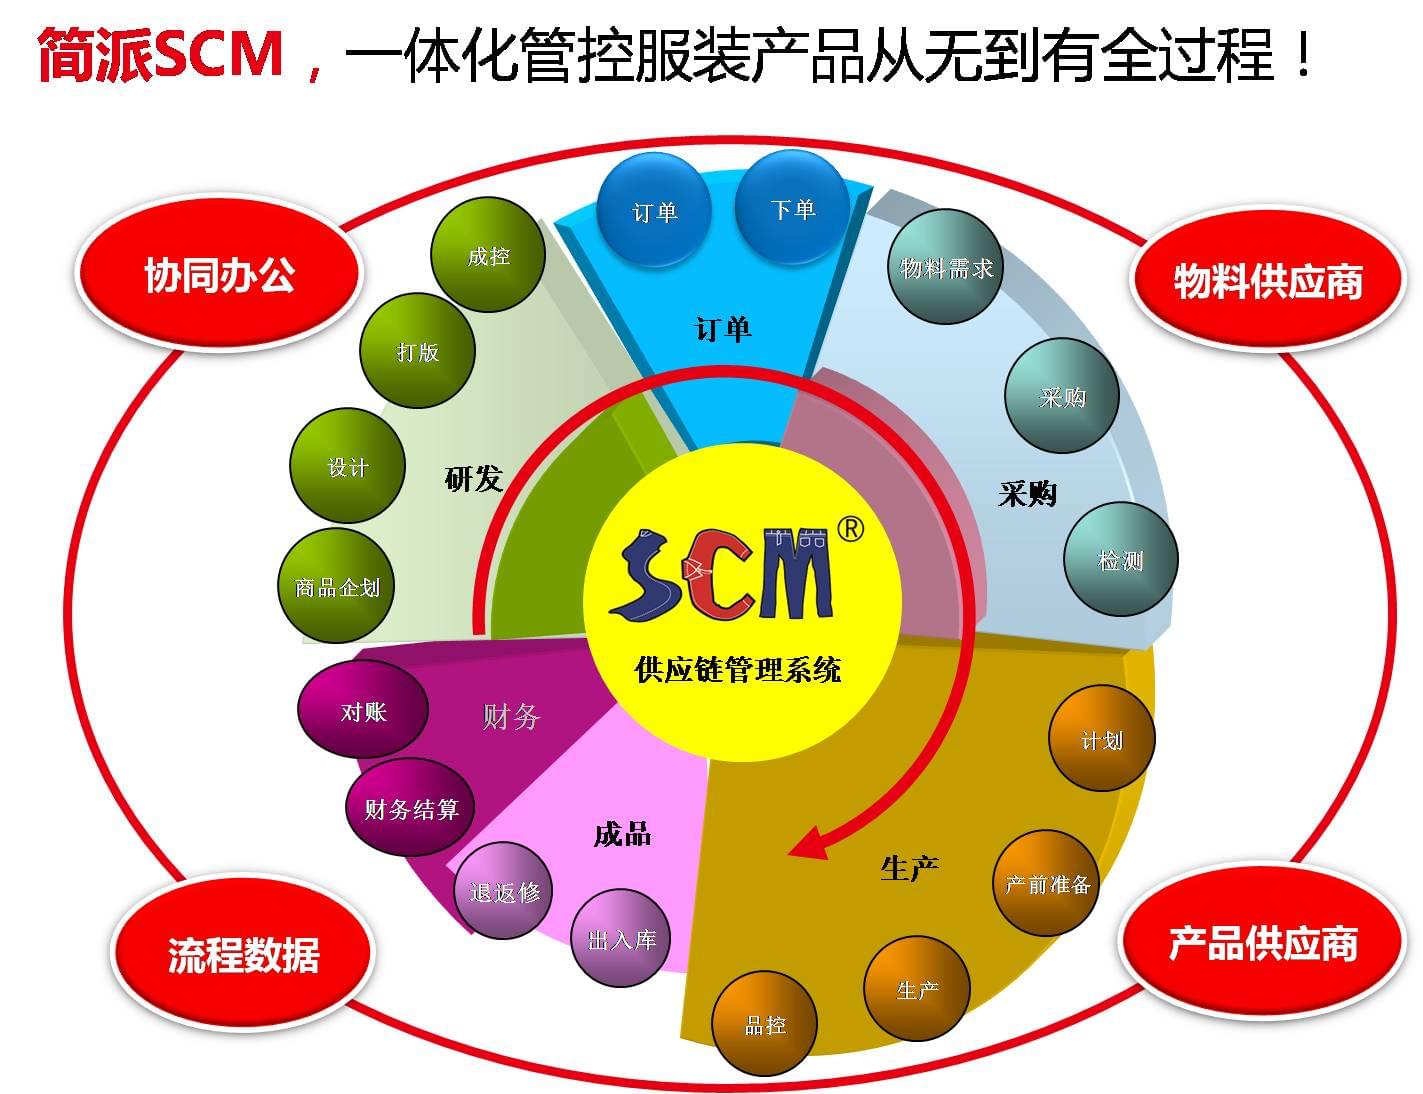 衣品天成,简派SCM,服装供应链管理系统,SCM供应链管理系统,广州简派软件科技有限公司